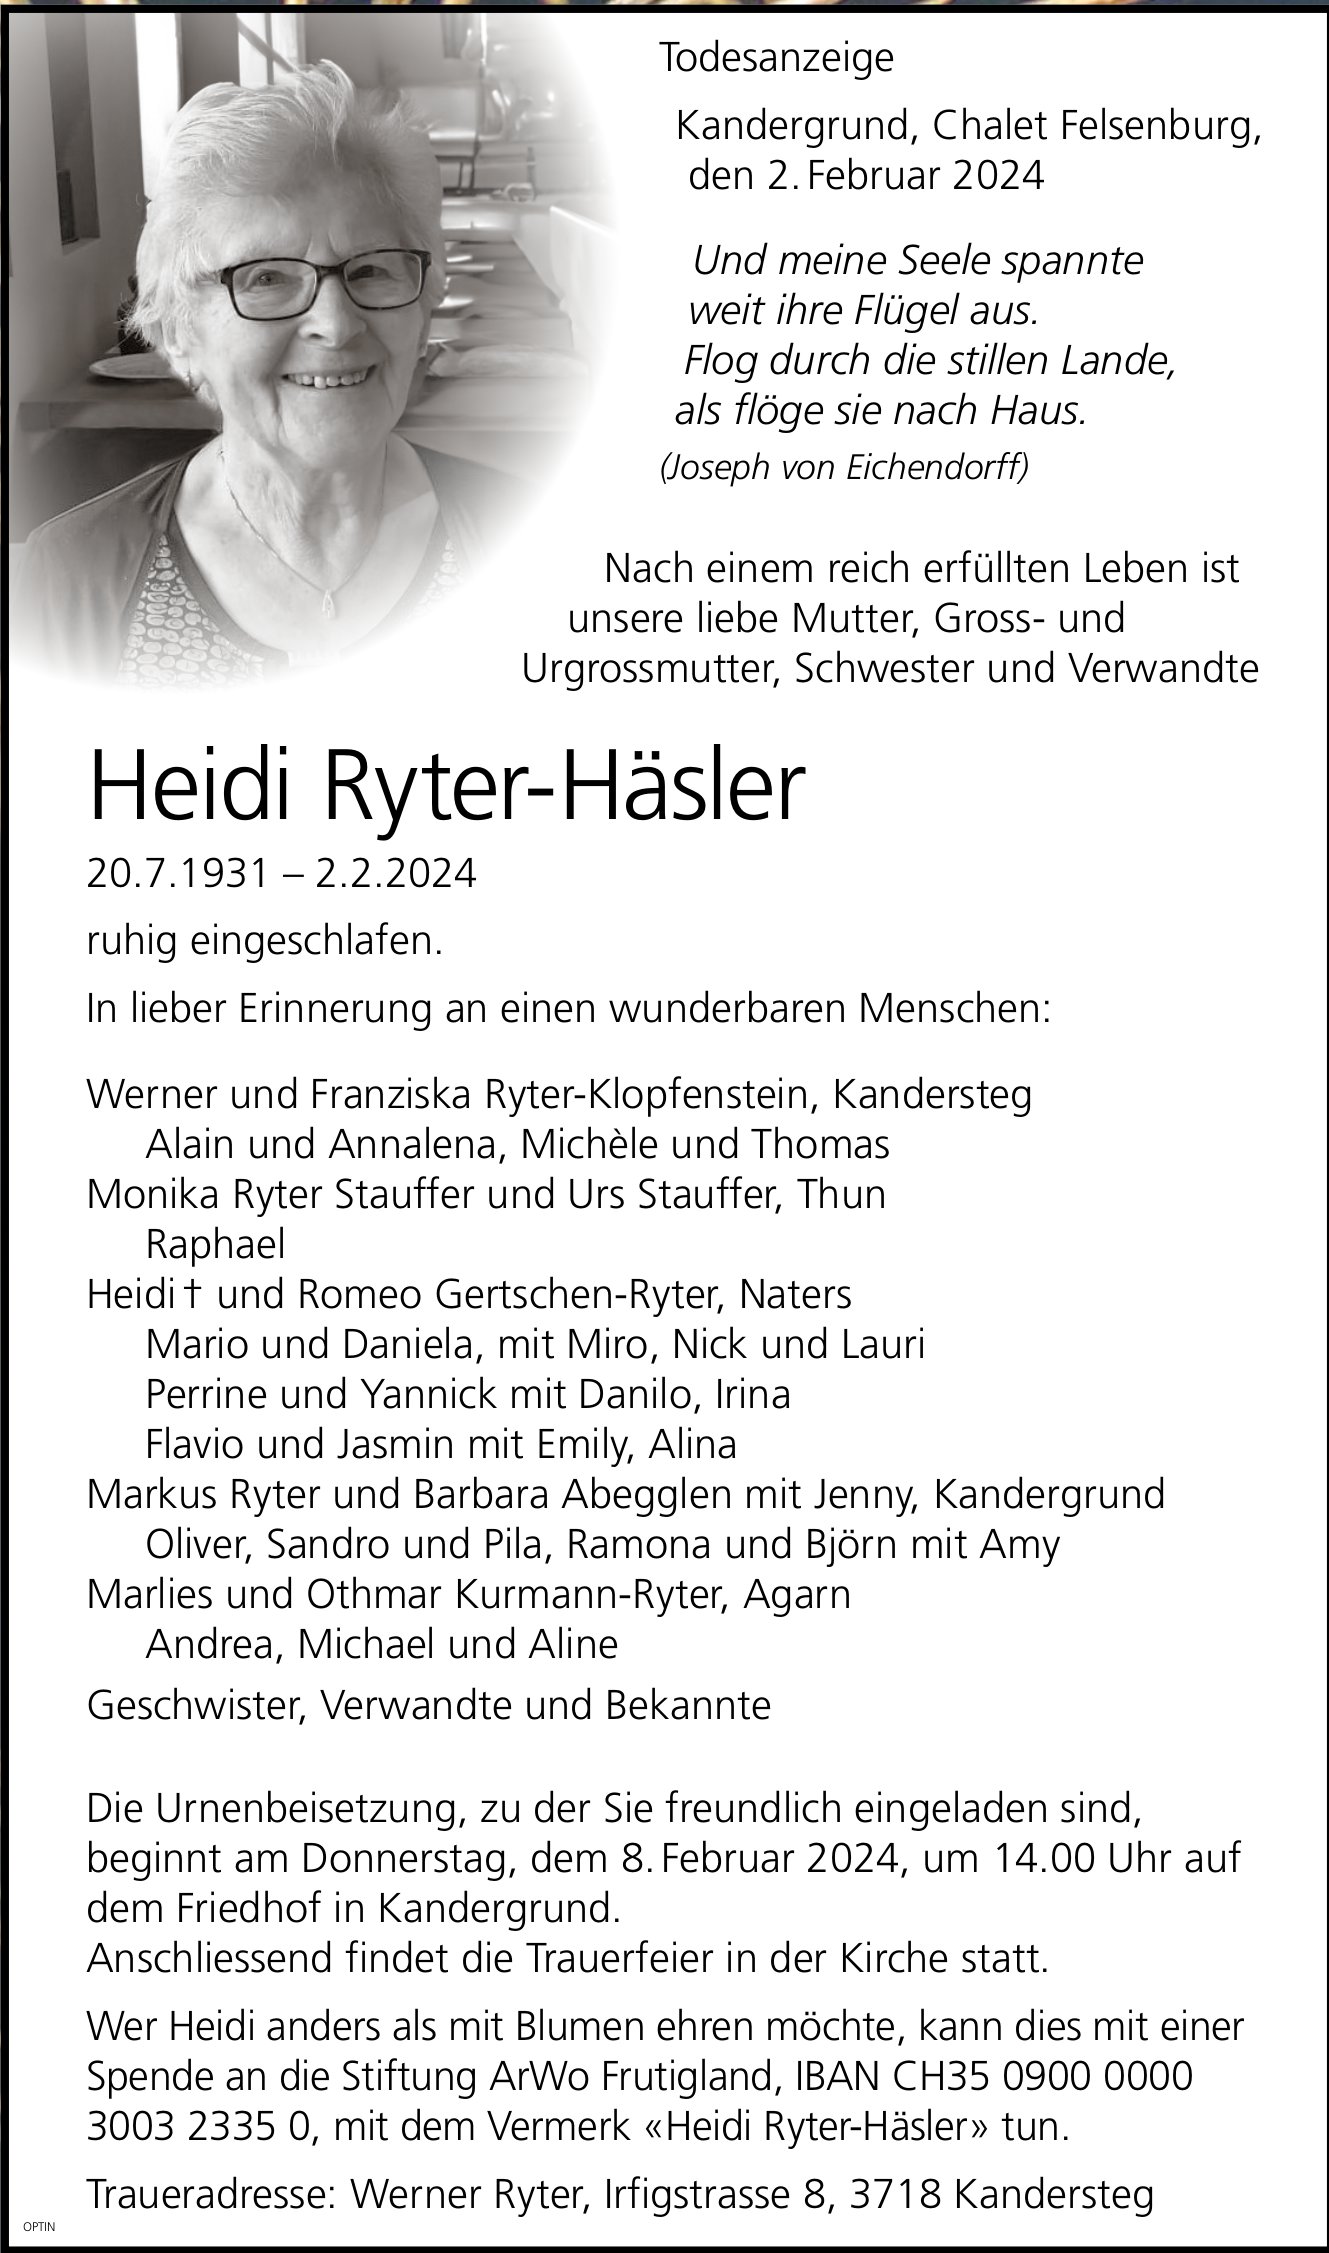 Heidi Ryter-Häsler, Februar 2024 / TA